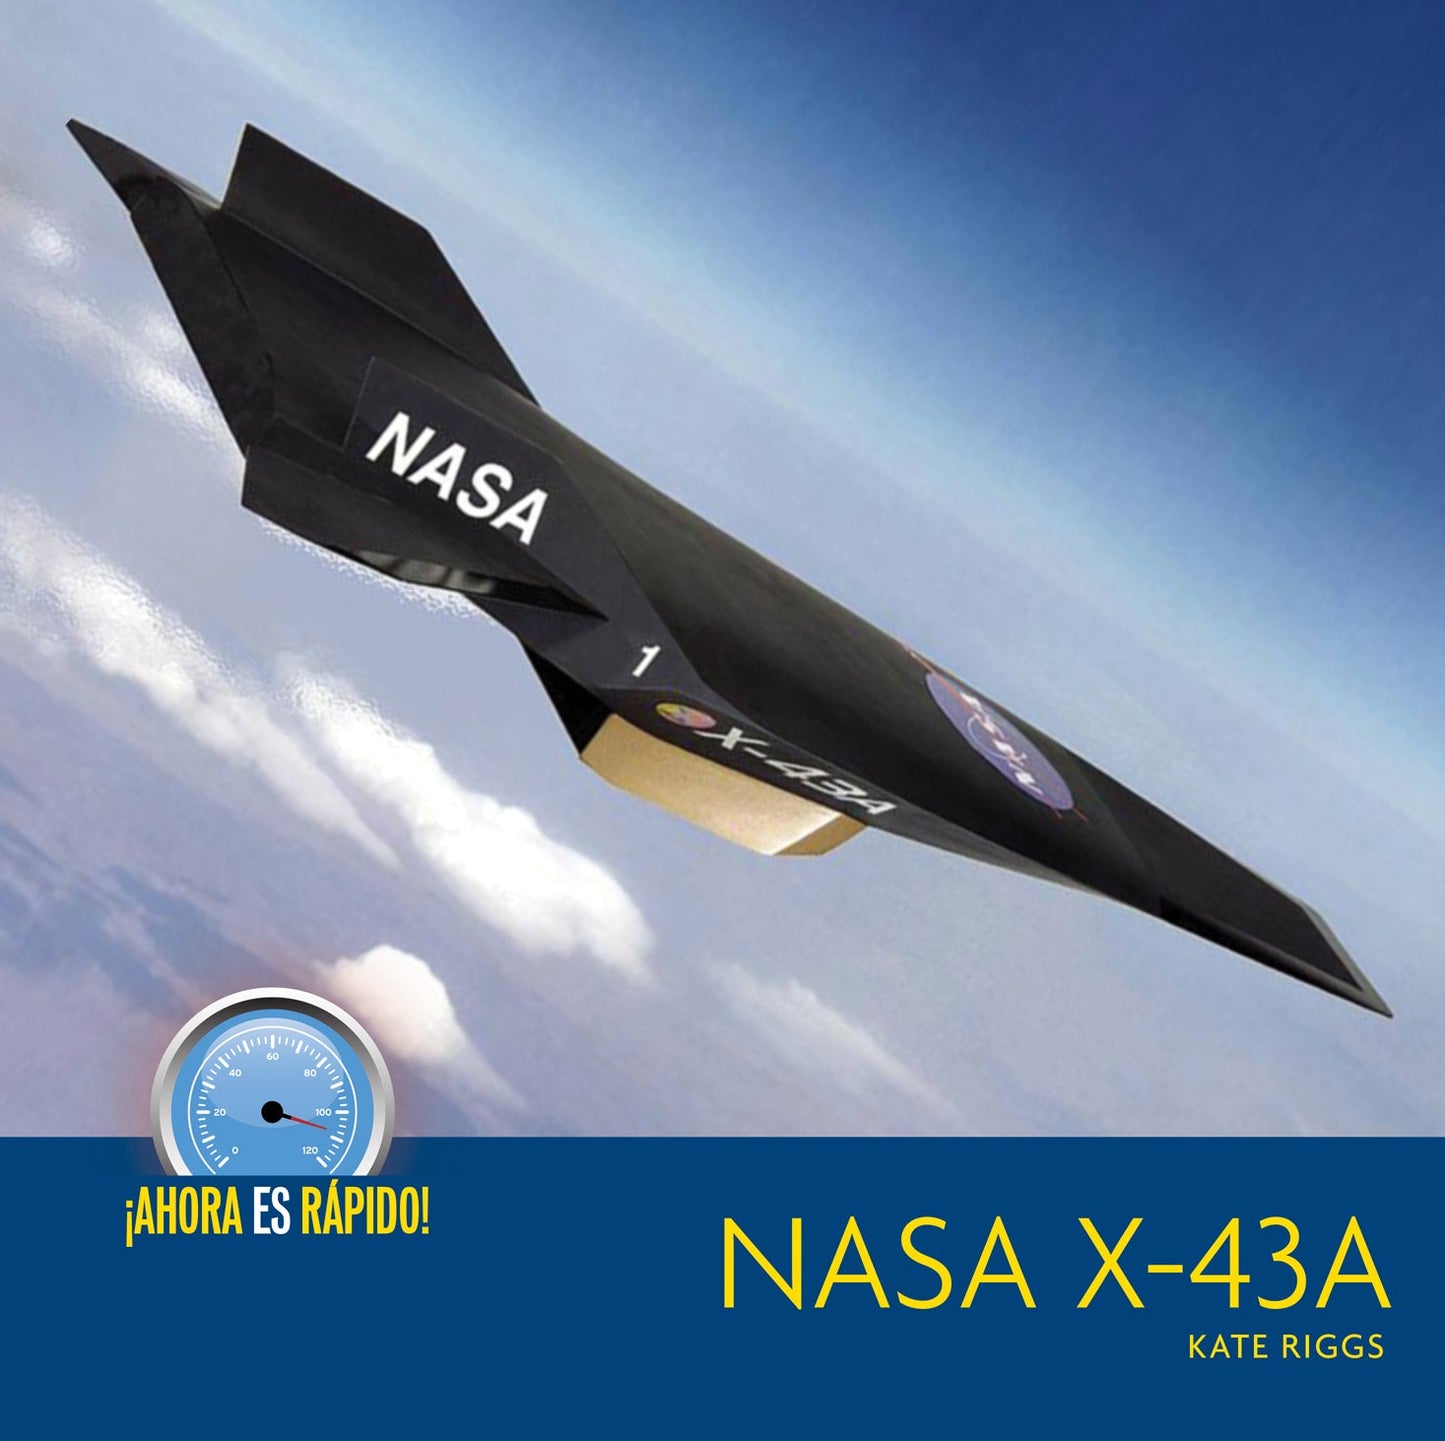 ¡Ahora es rápido!: NASA X-43A by The Creative Company Shop